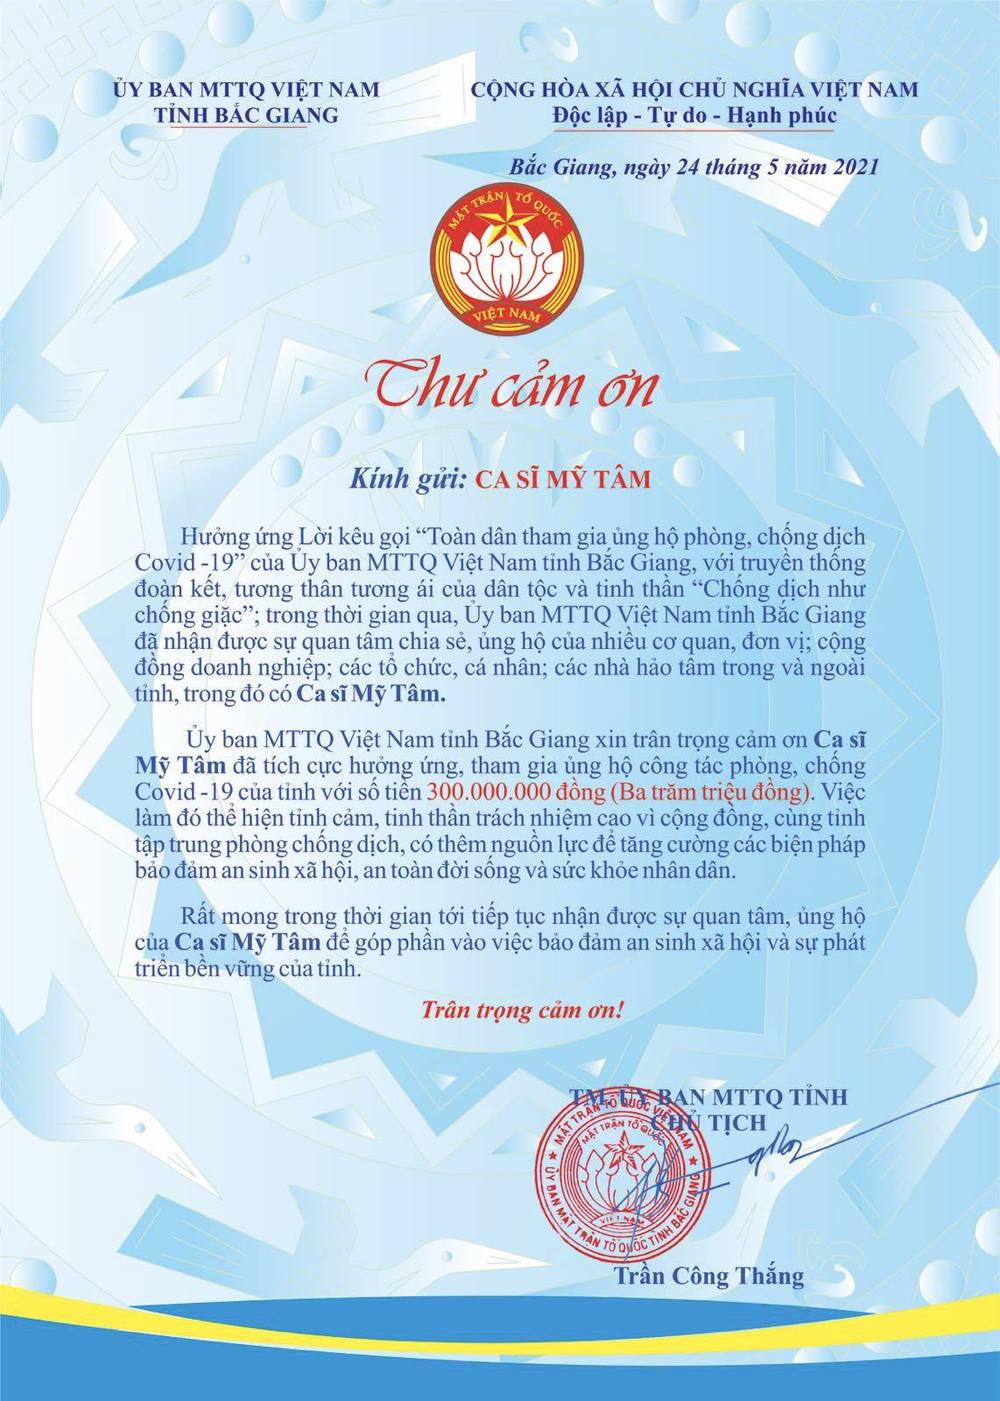  
Thư cảm ơn Ủy ban MTTQ Việt Nam tỉnh Bắc Giang gửi Mỹ Tâm. (Ảnh: Ủy ban MTTQ tỉnh Bắc Giang)